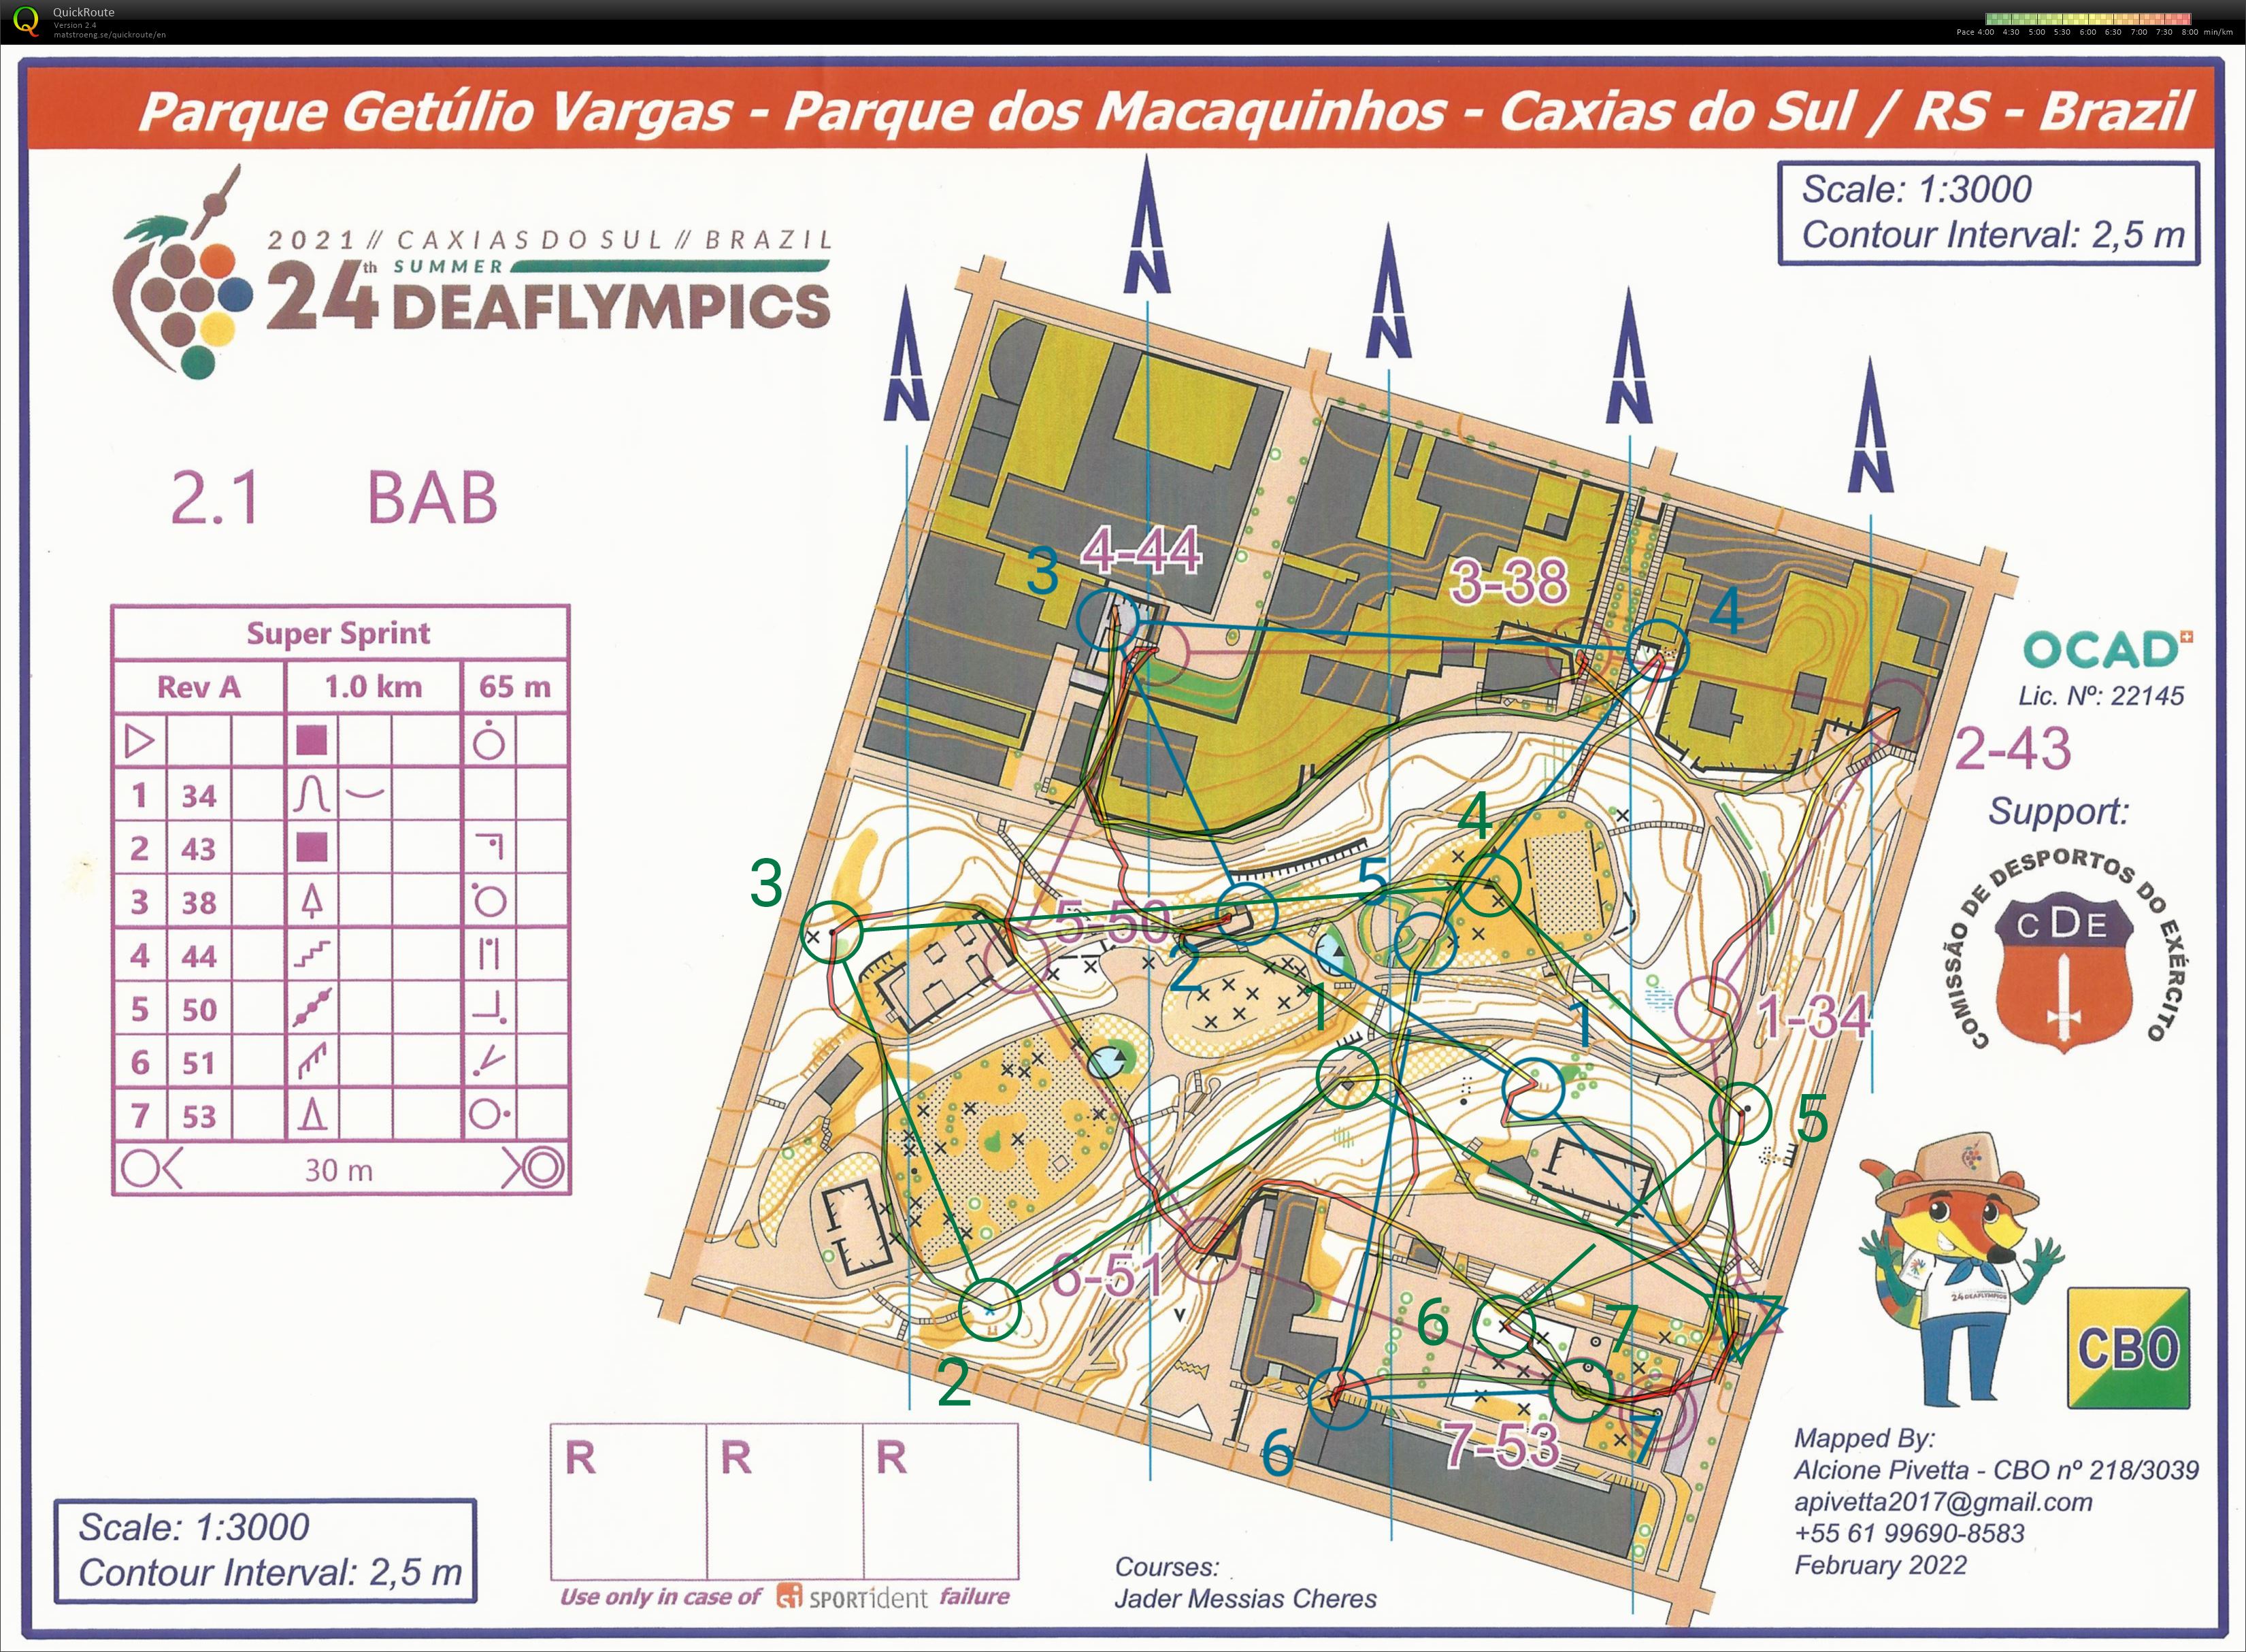 Deaflympics - Super sprint relay (08.05.2022)